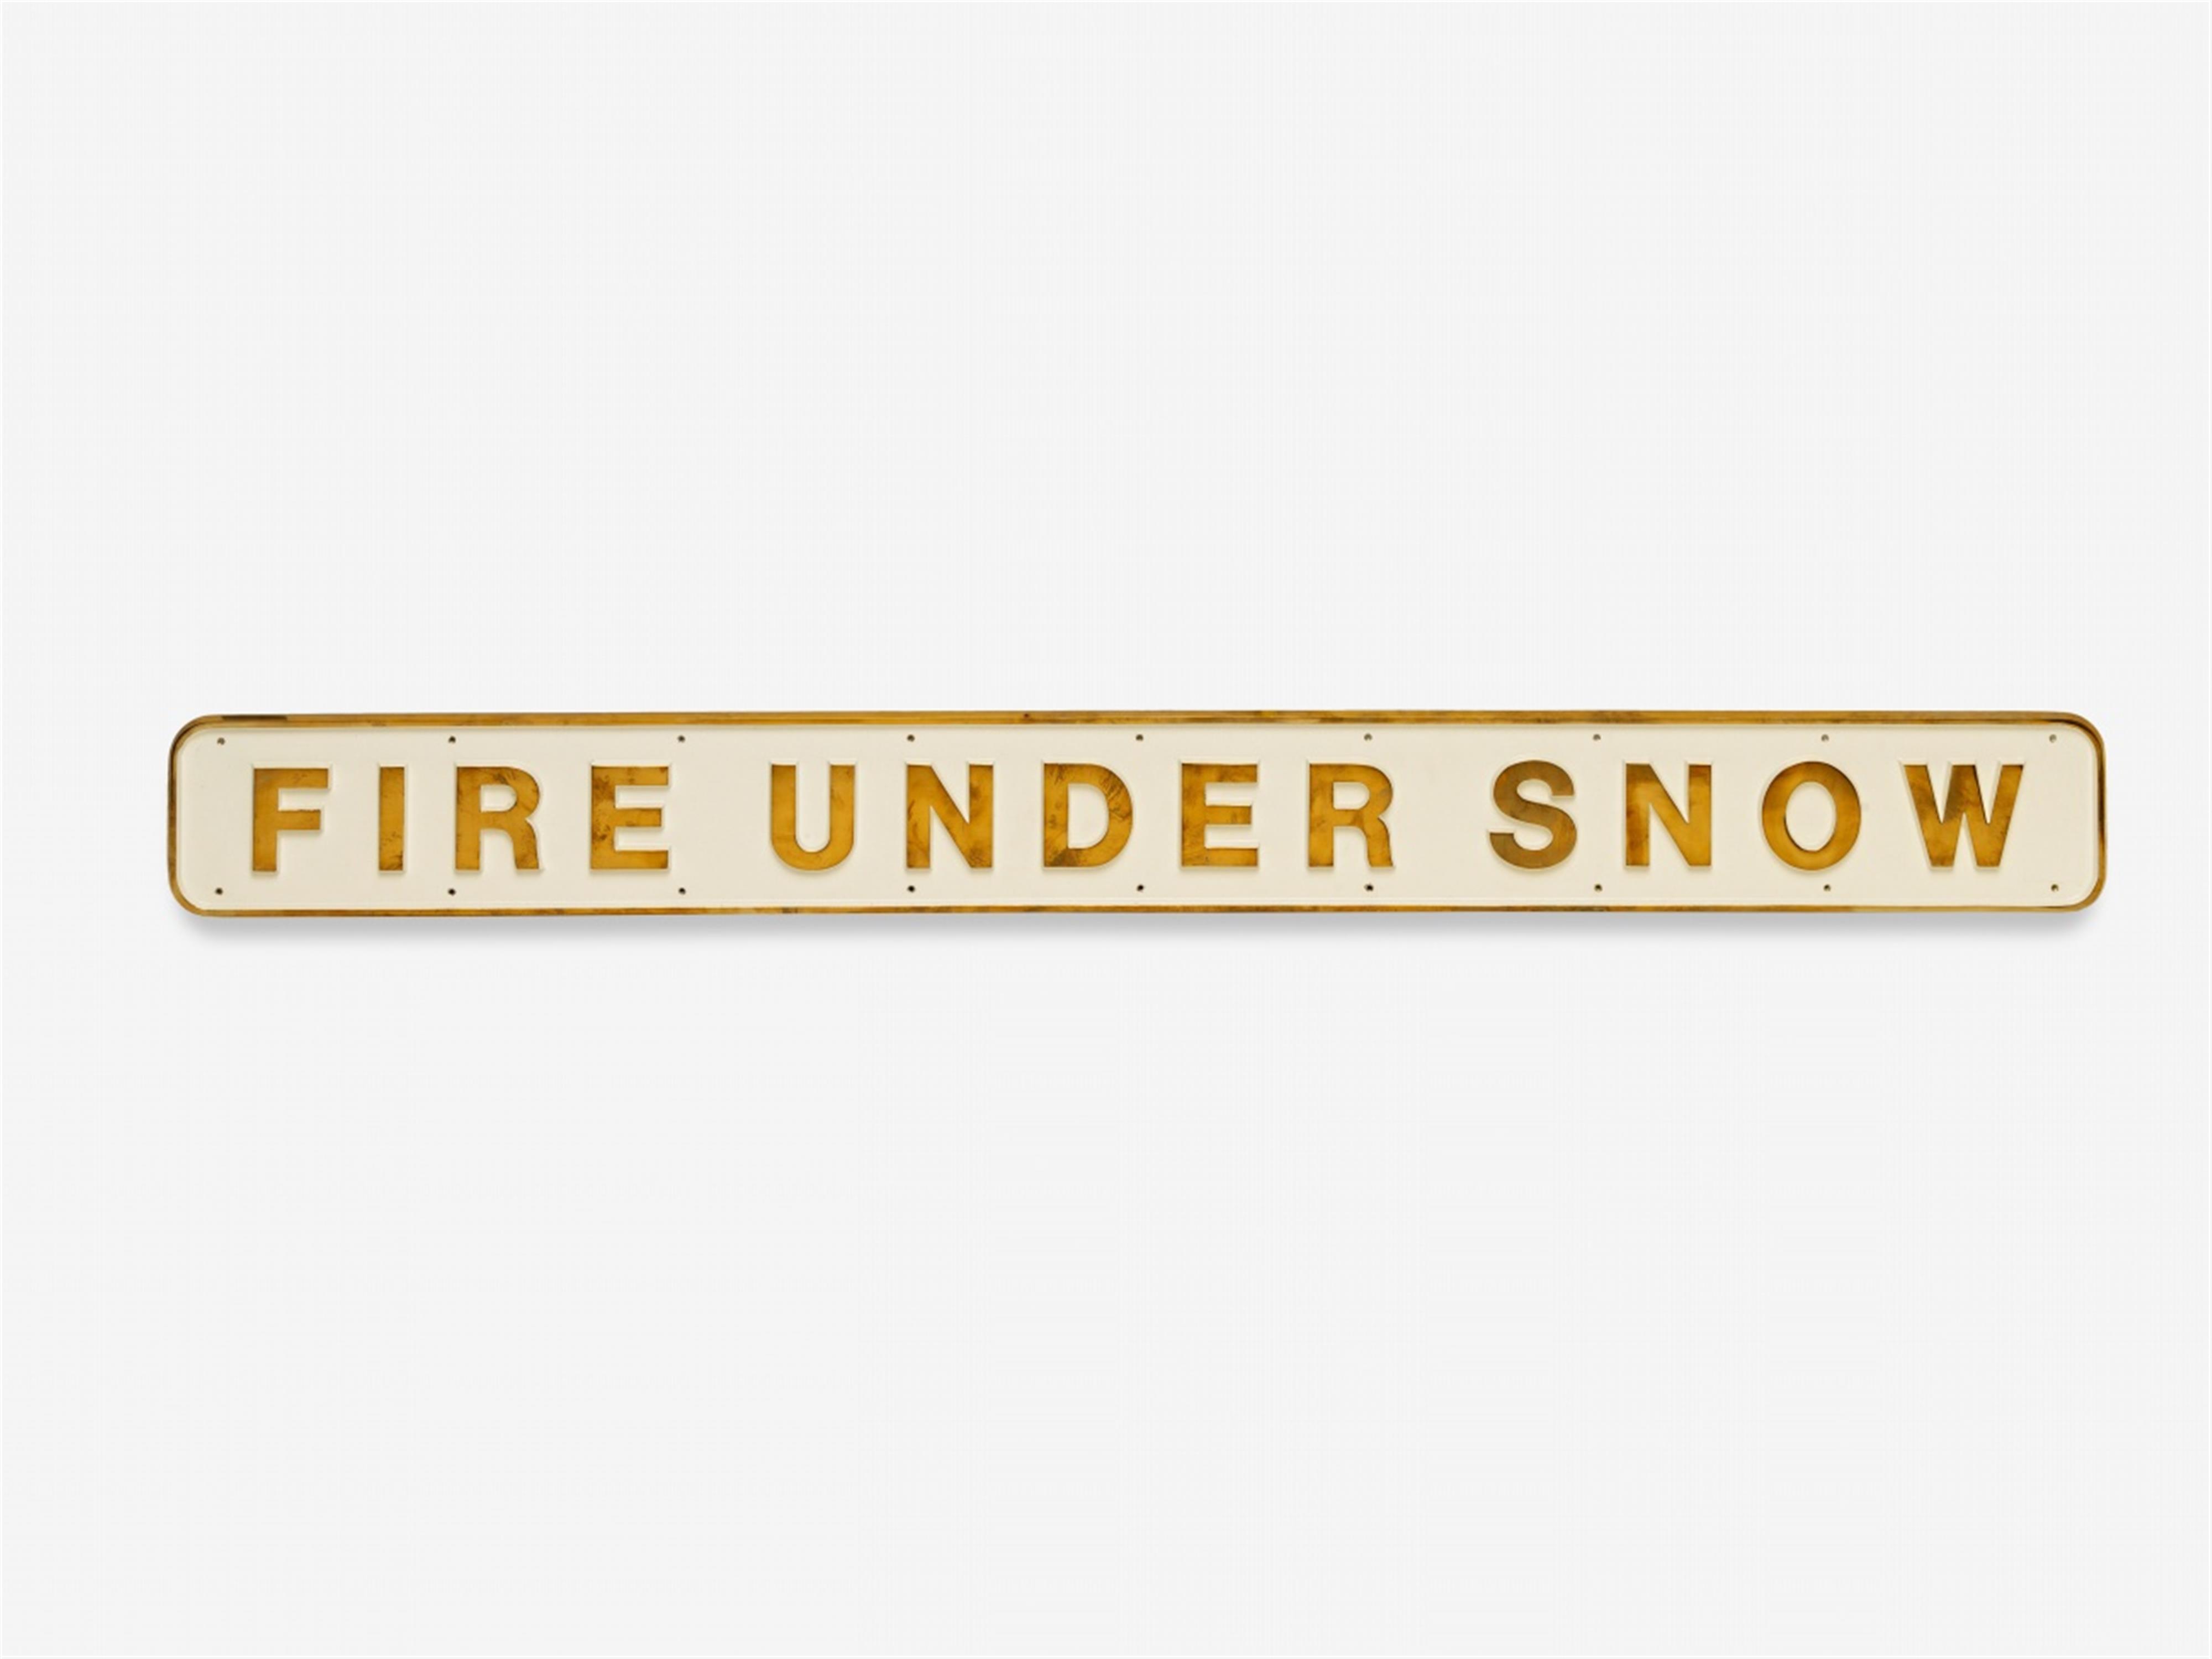 Darren Almond - Fire under snow - image-1